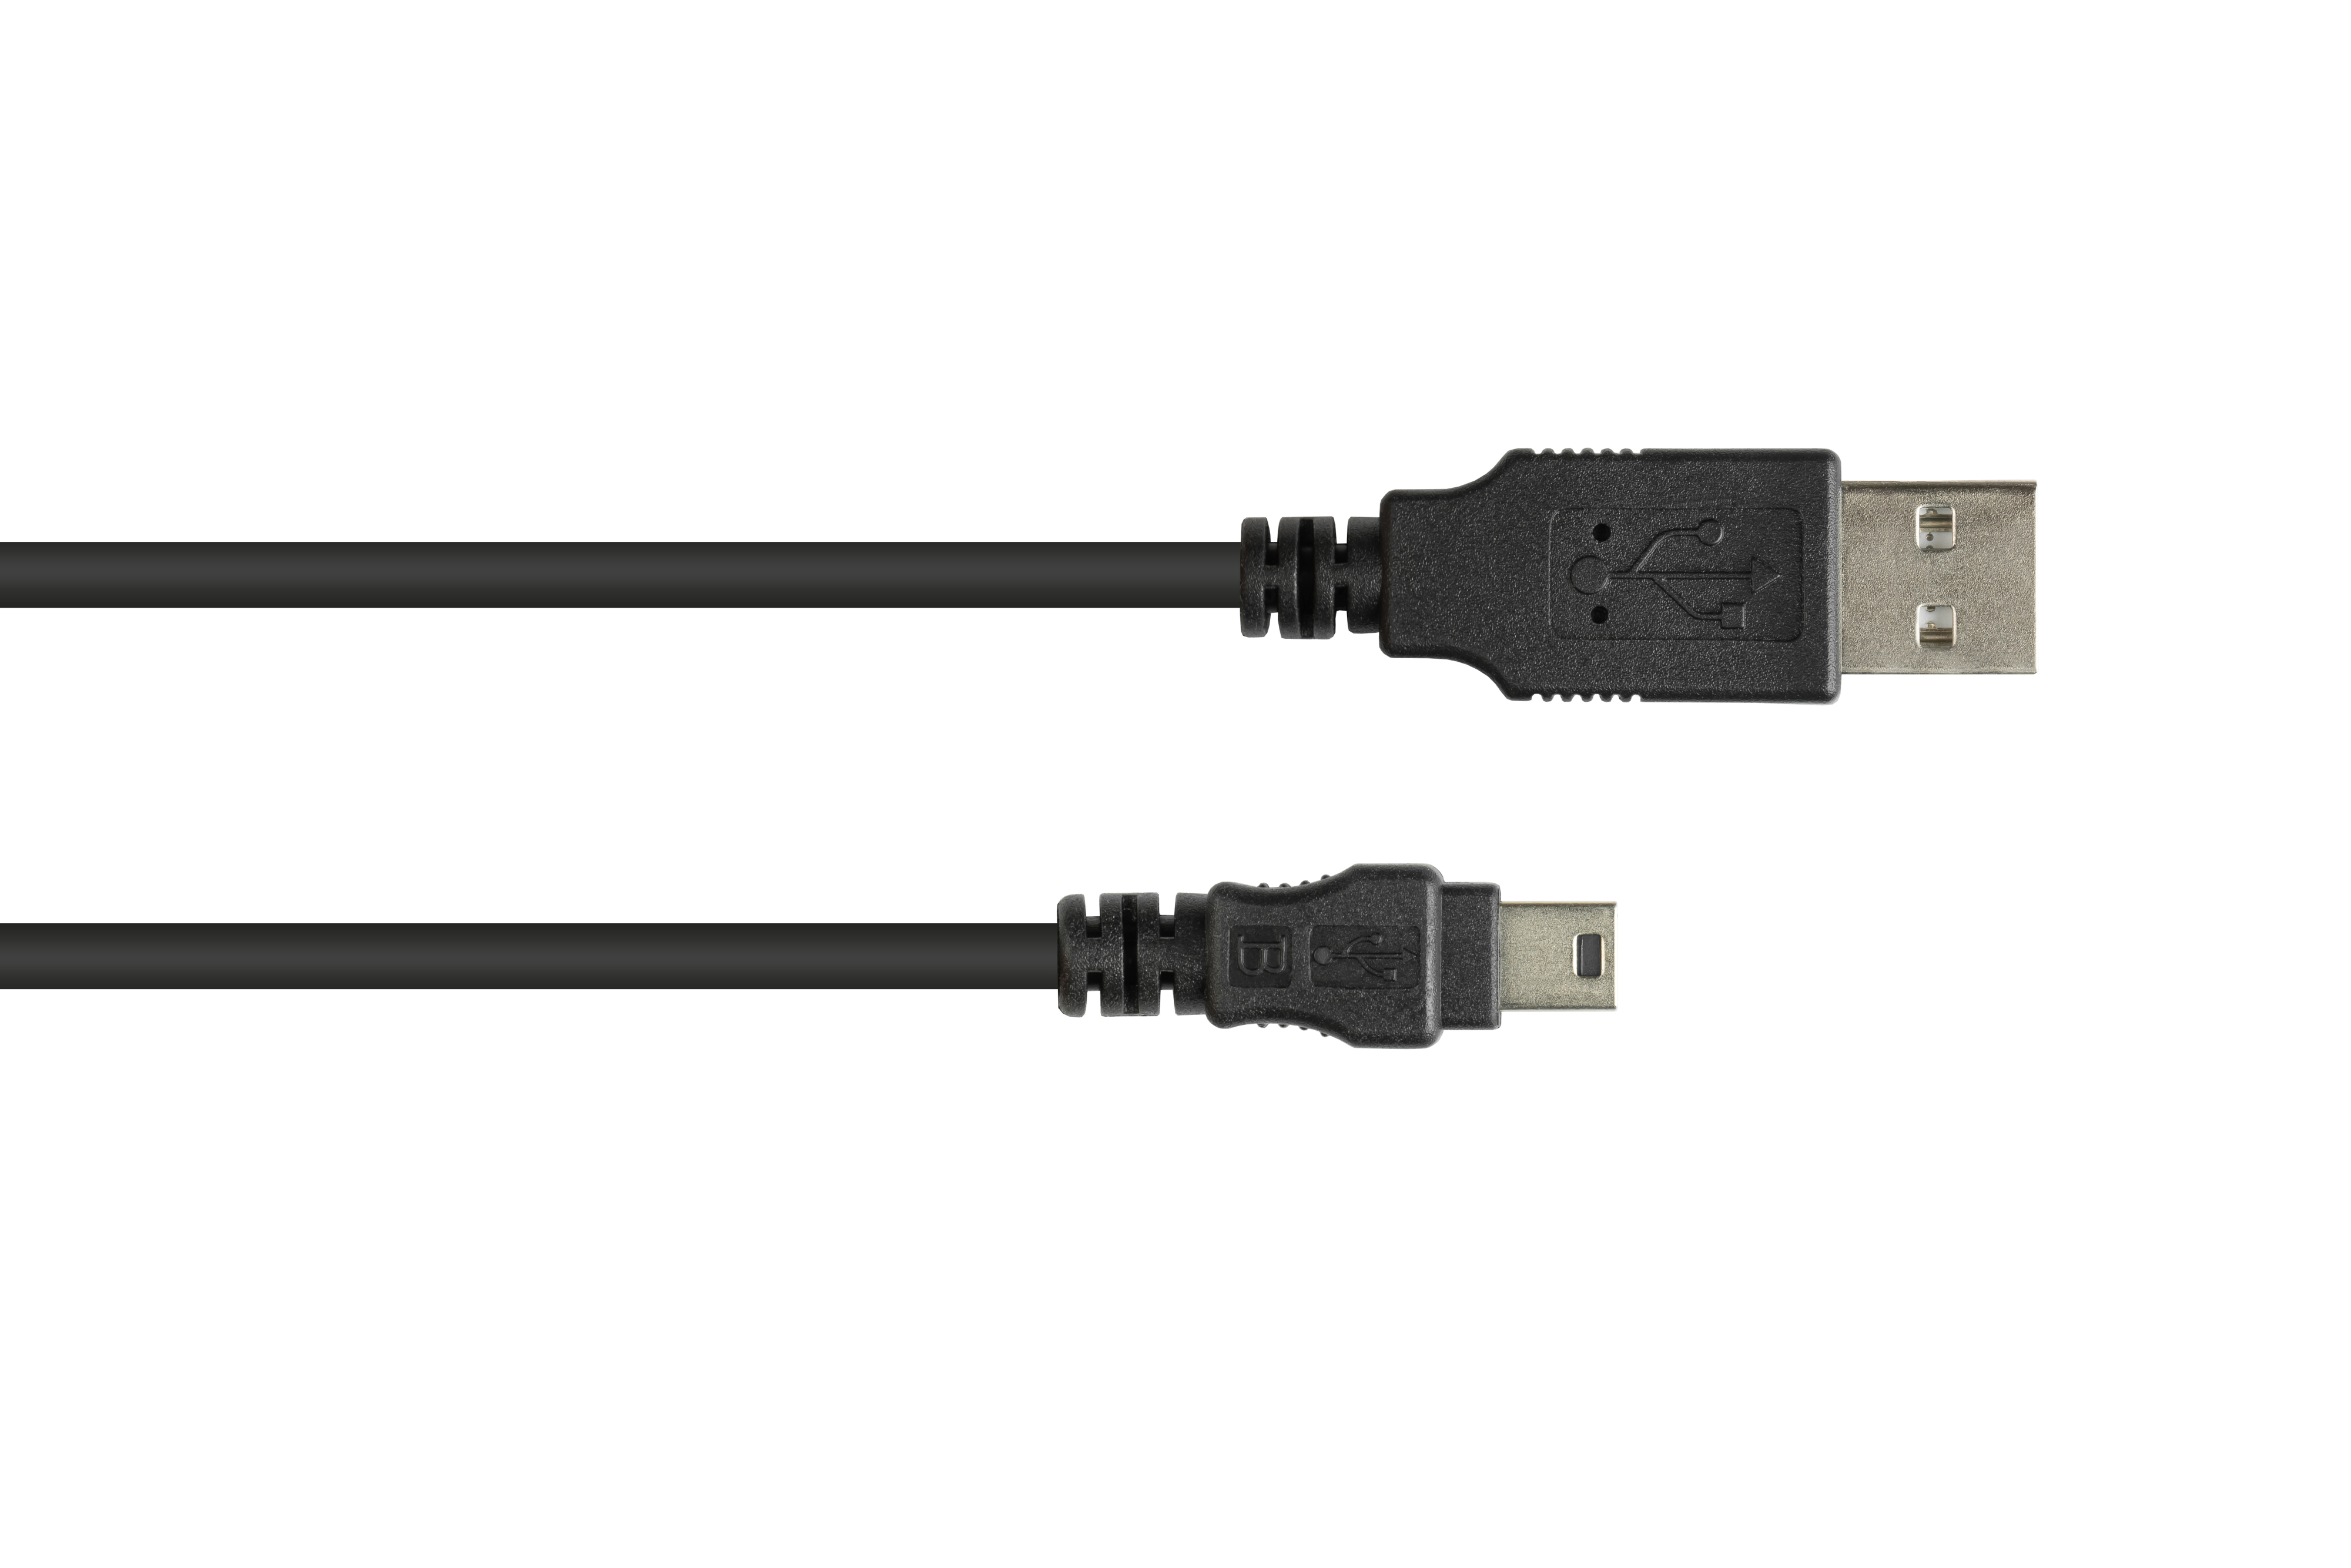 Anschlusskabel B 5-pin, GOOD an USB CONNECTIONS A 2.0 Mini Stecker schwarz Stecker